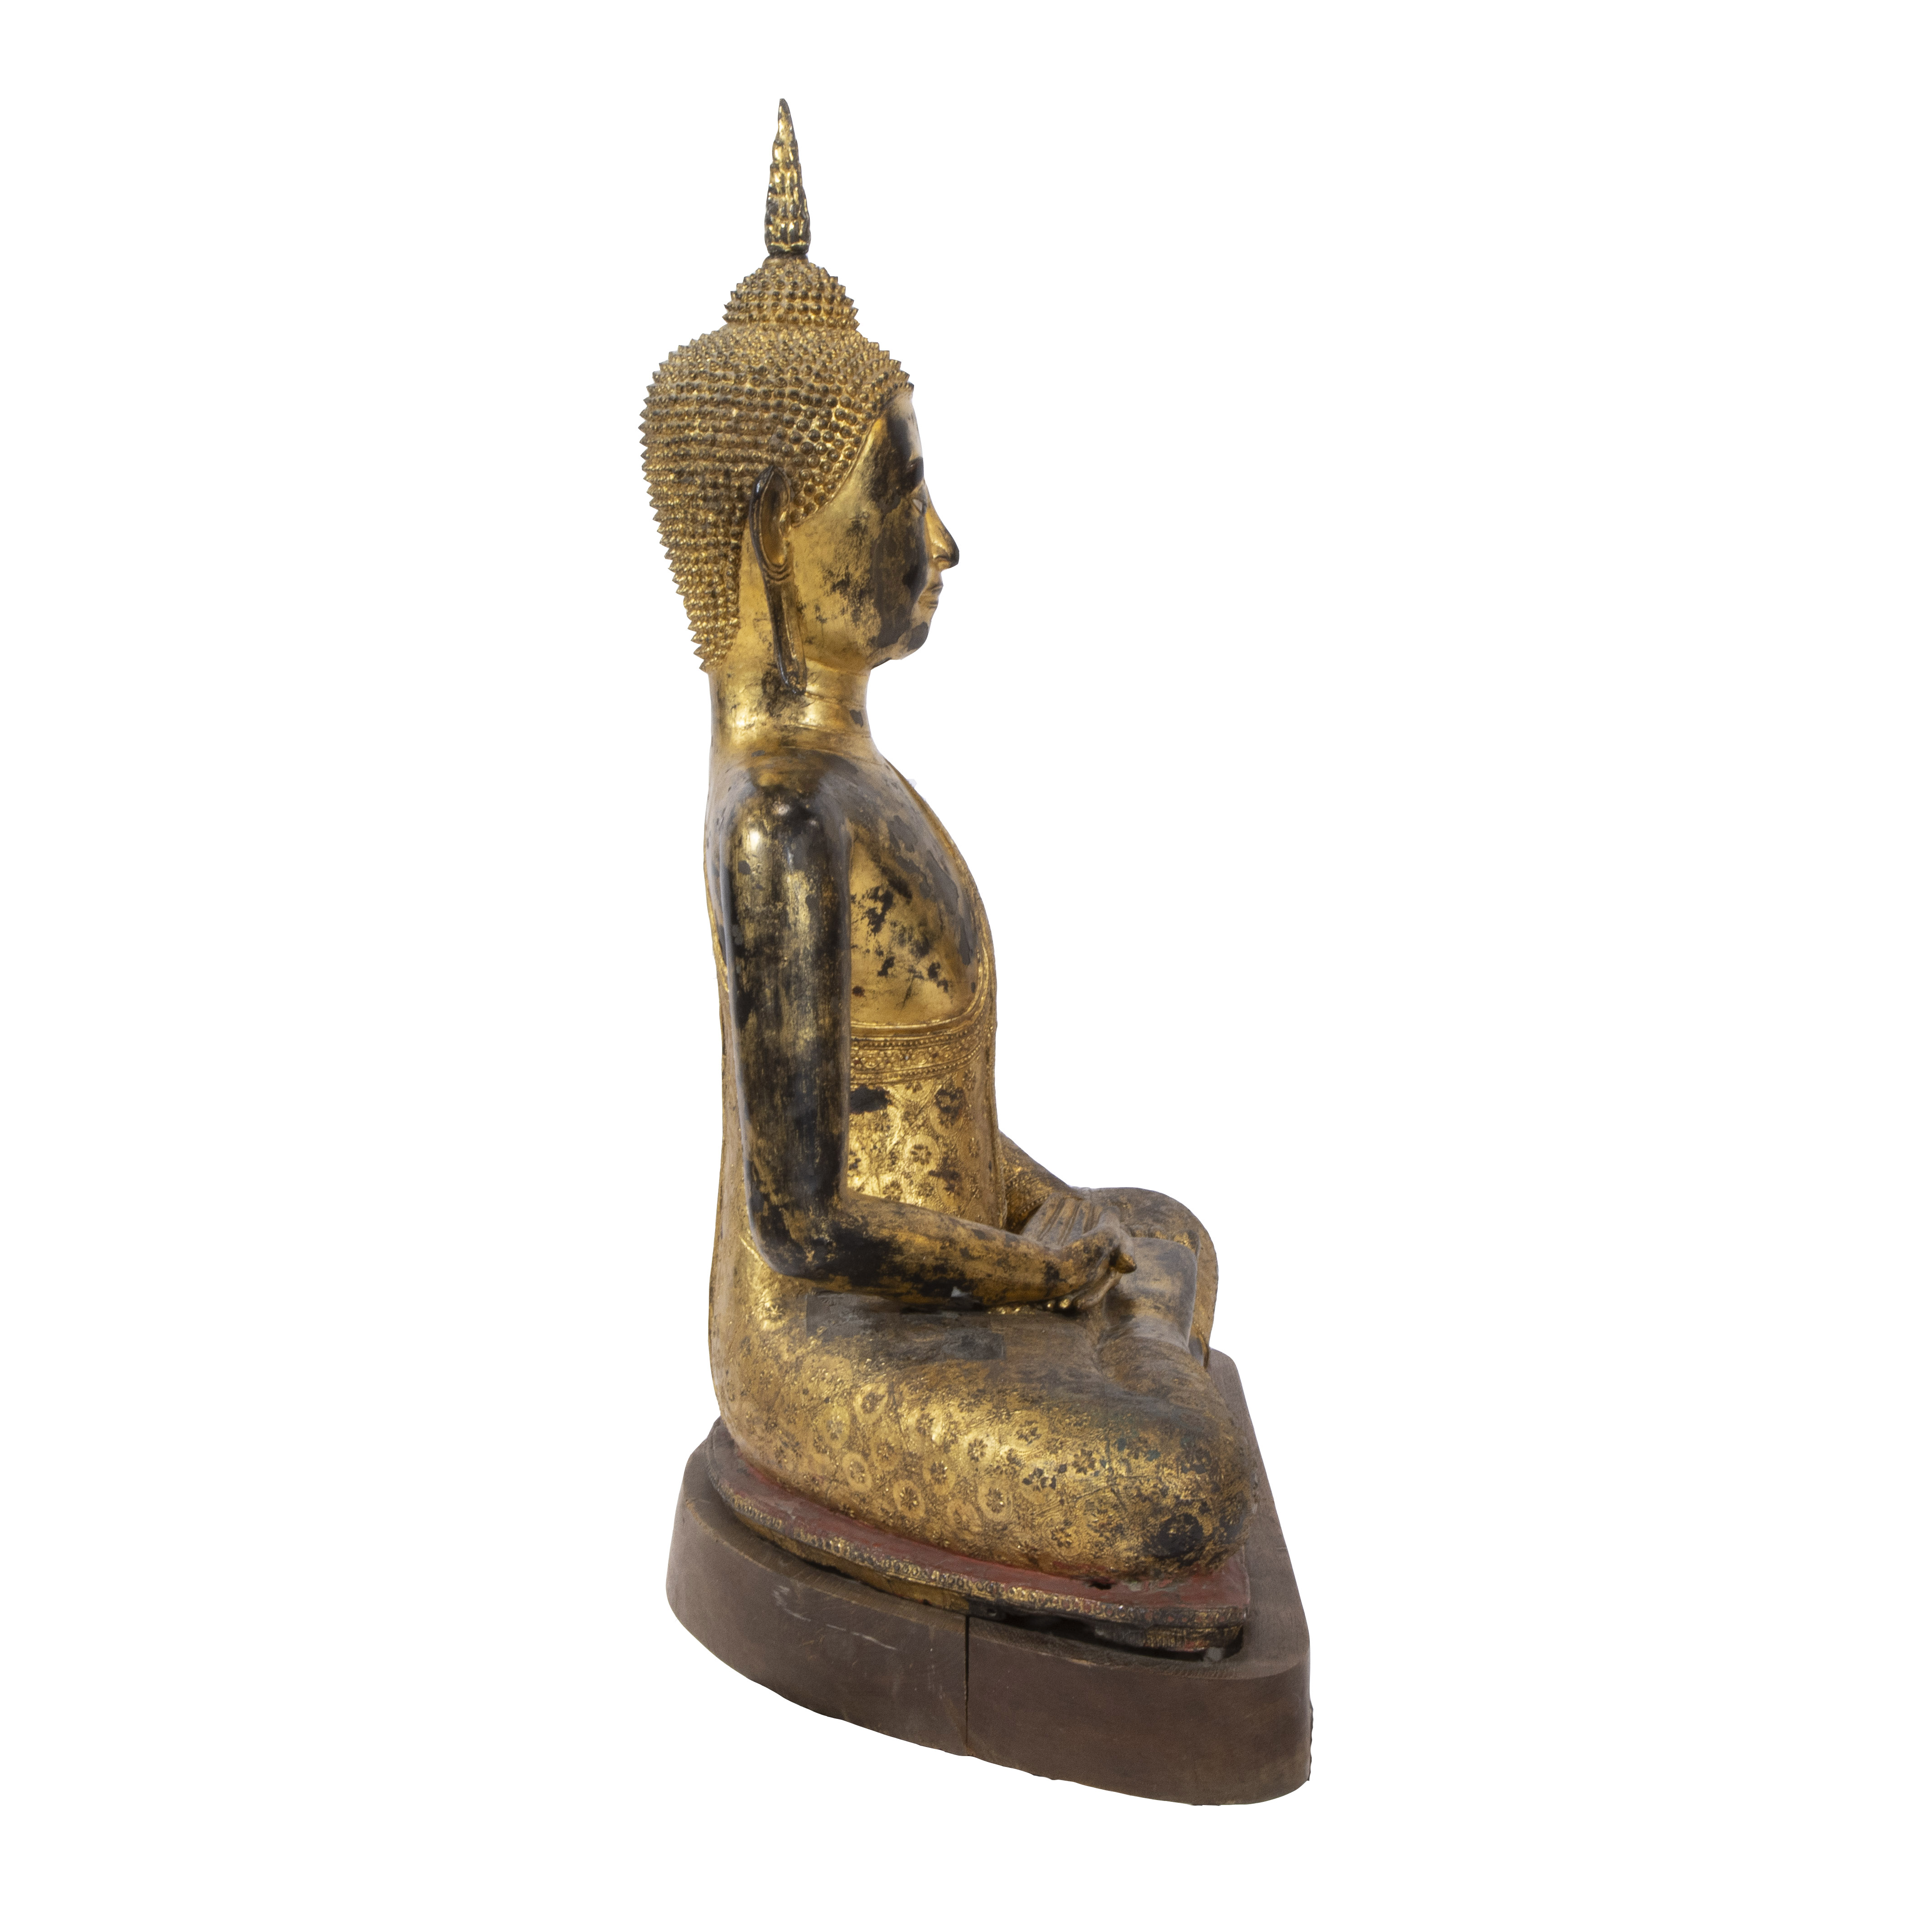 Rattanakosin gilded bronze Buddha, Thailand - Image 3 of 3